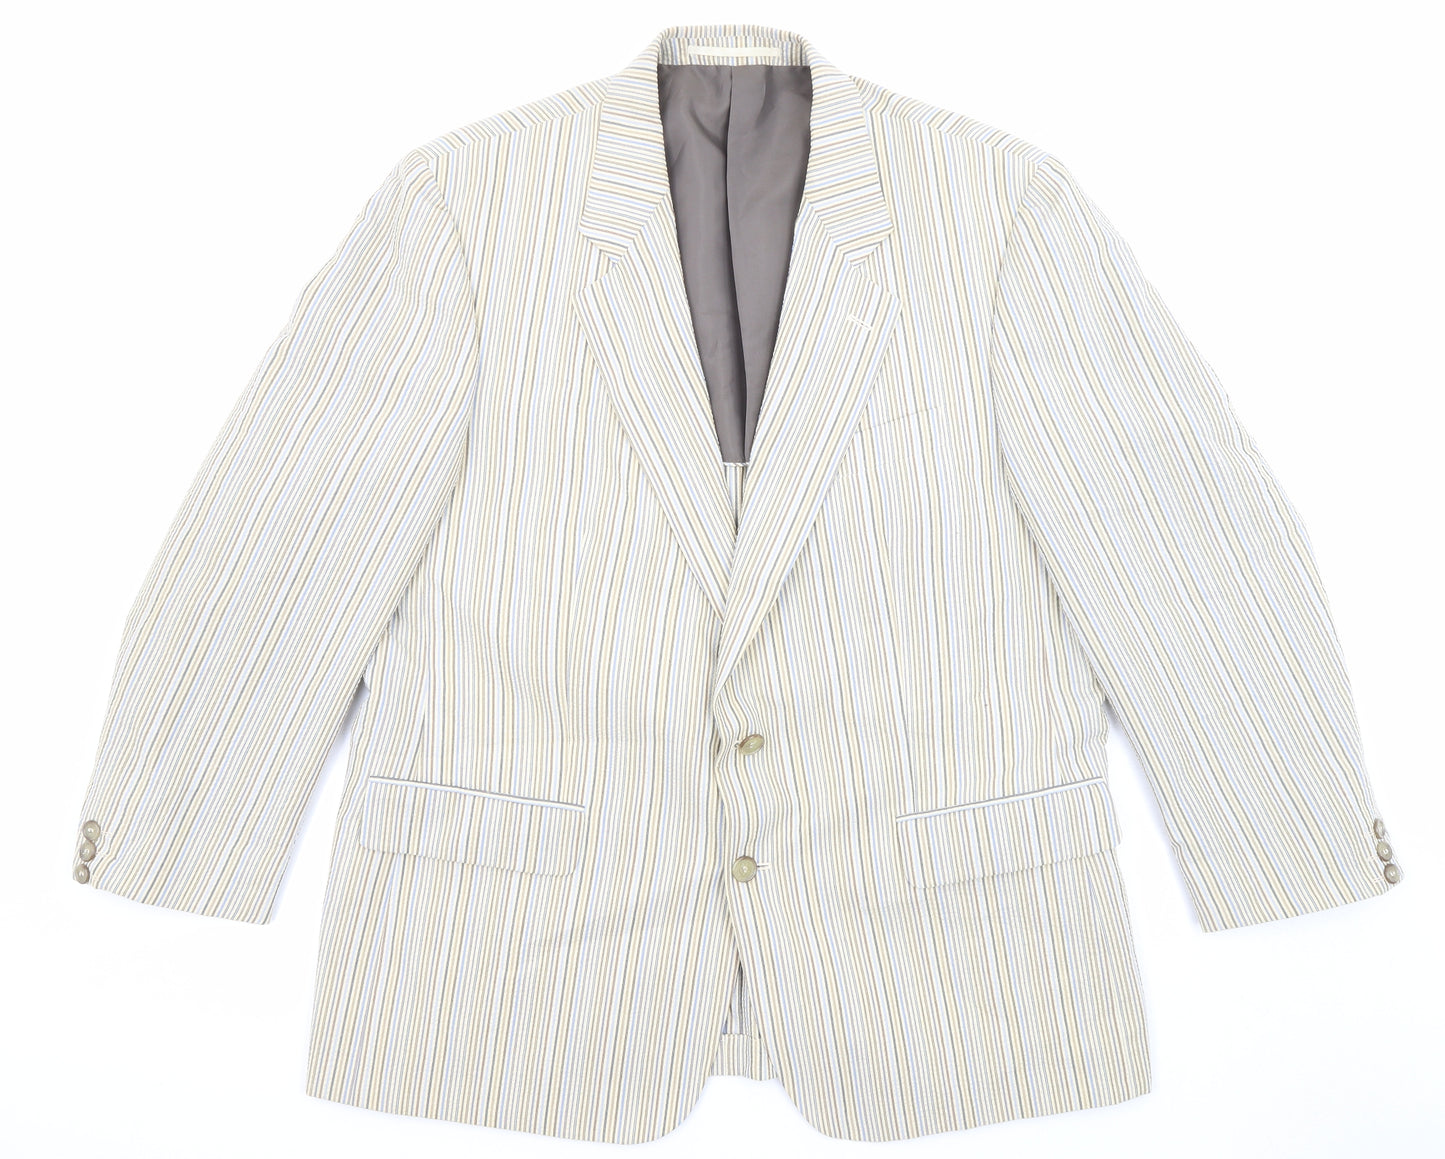 Brook Taverner Mens Multicoloured Striped Polyester Jacket Suit Jacket Size 44 Regular